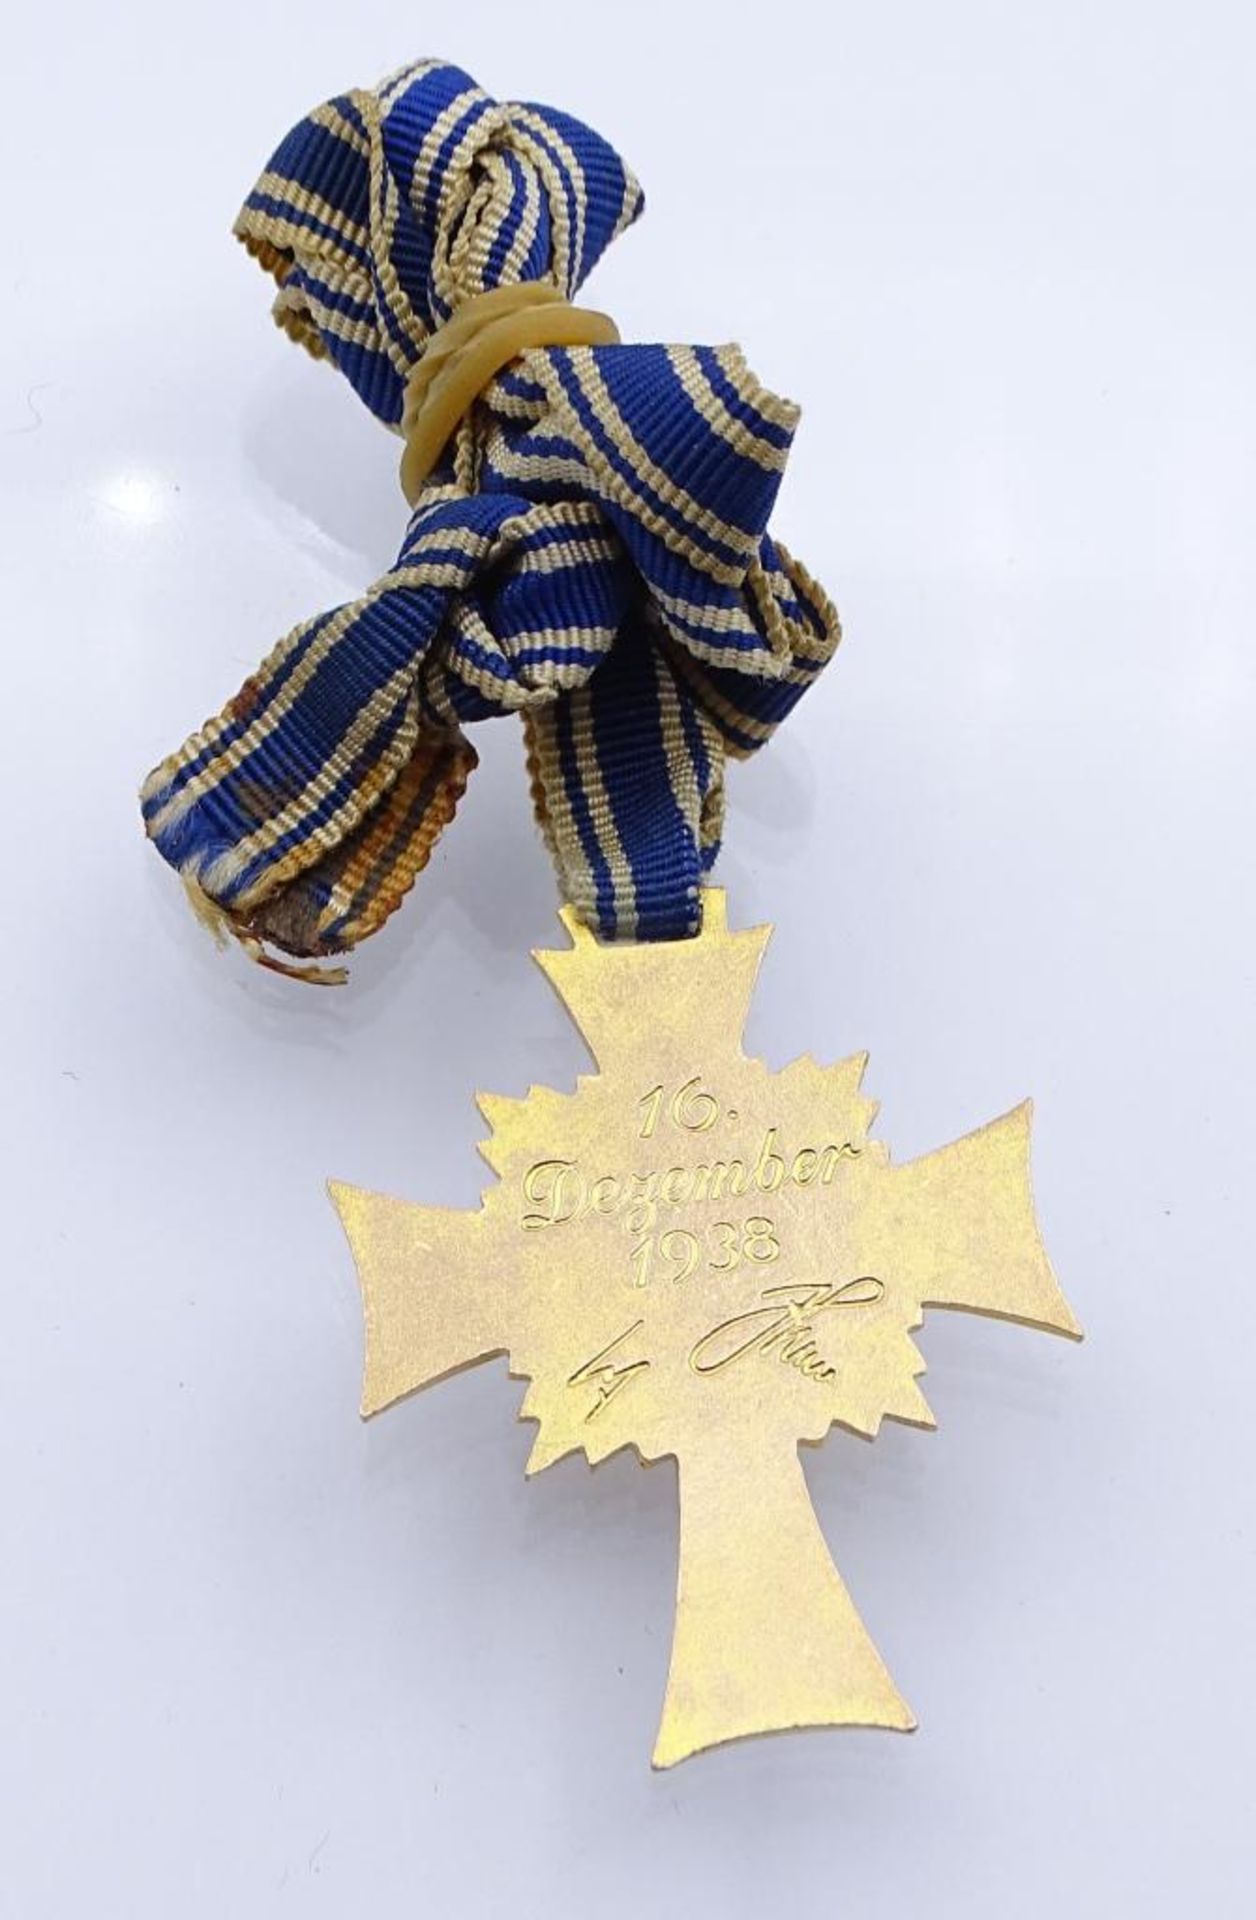 Mutterkreuz in Gold an Band, 16.Dezember 1938- - -22.61 % buyer's premium on the hammer priceVAT - Bild 2 aus 2